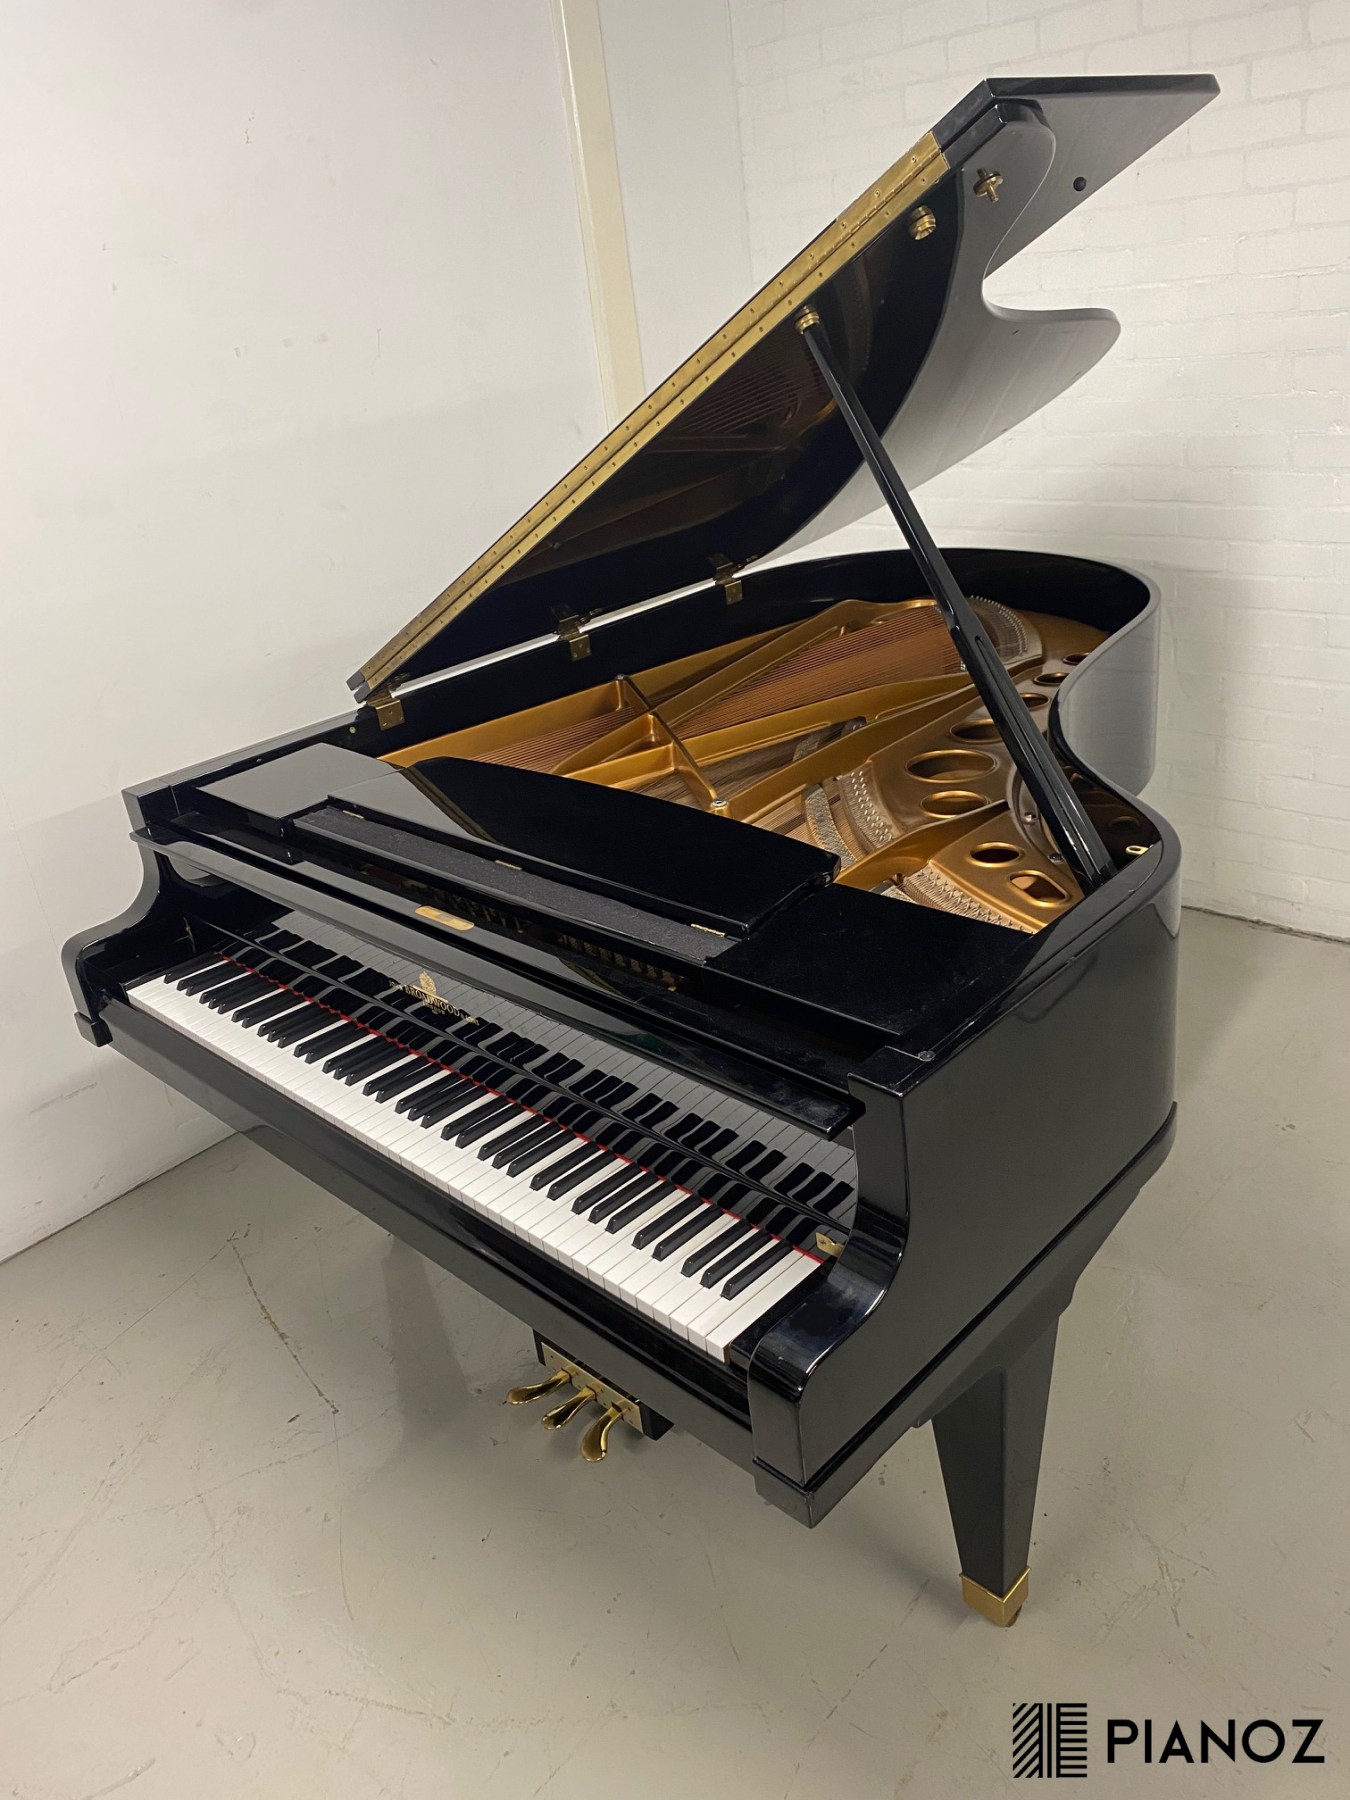 Broadwood Model 200 "Bosendorfer" Grand Piano piano for sale in UK